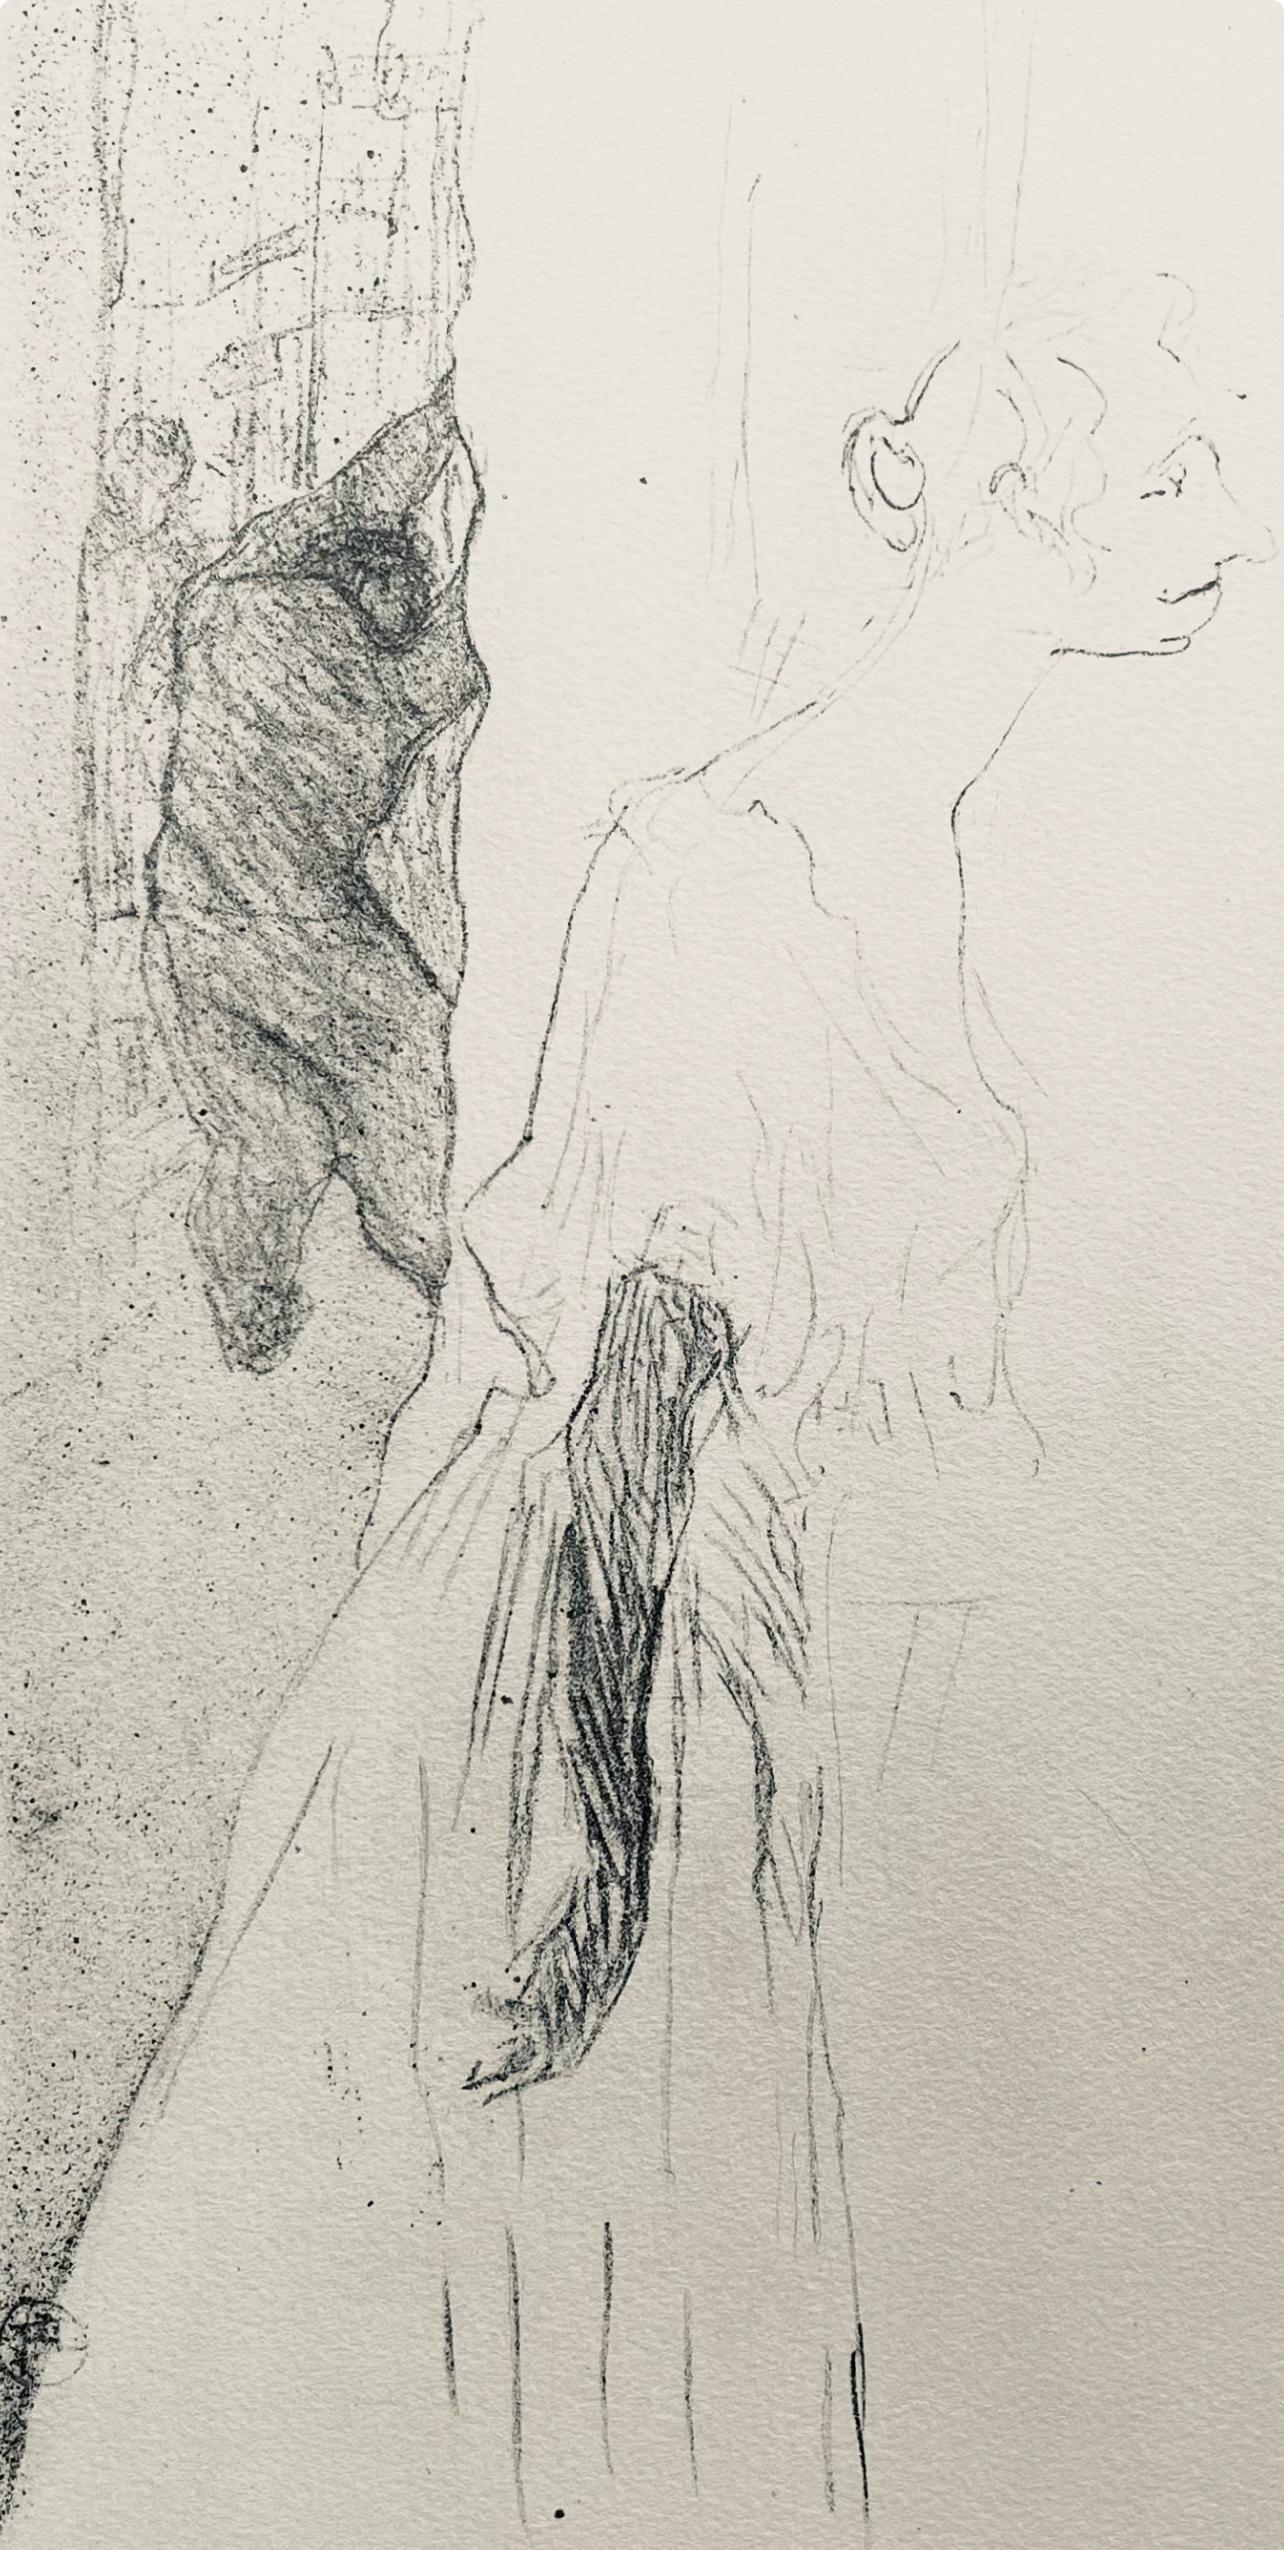 Toulouse-Lautrec, Composition, Yvette Guilbert vue par Toulouse-Lautrec (after) - Print by Henri de Toulouse-Lautrec